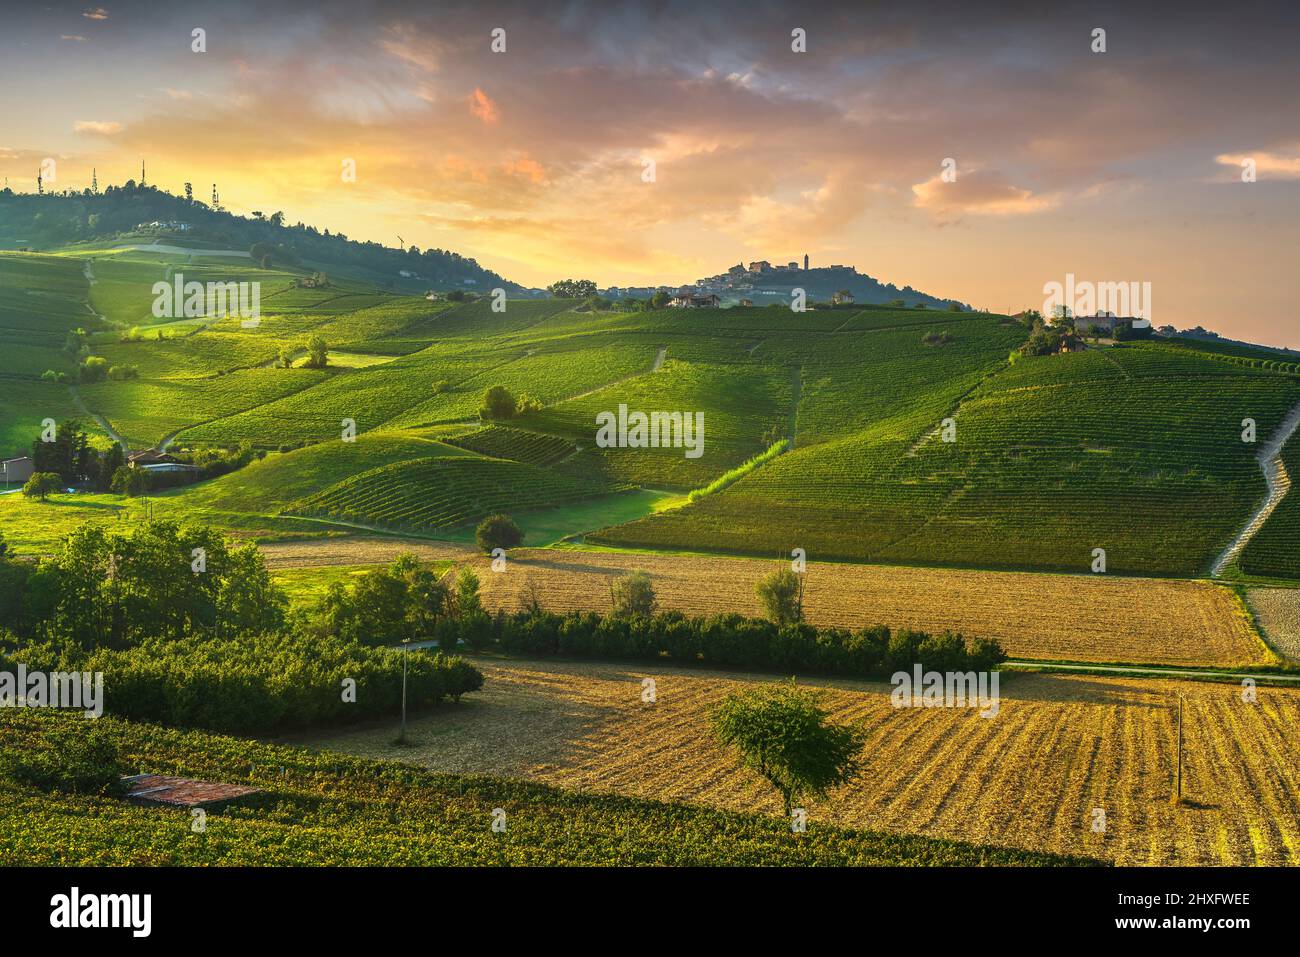 Les vignobles des Langhe, panorama au coucher du soleil et de la Morra, Barolo Site de l'Unesco, Piémont, Italie du nord de l'Europe. Banque D'Images